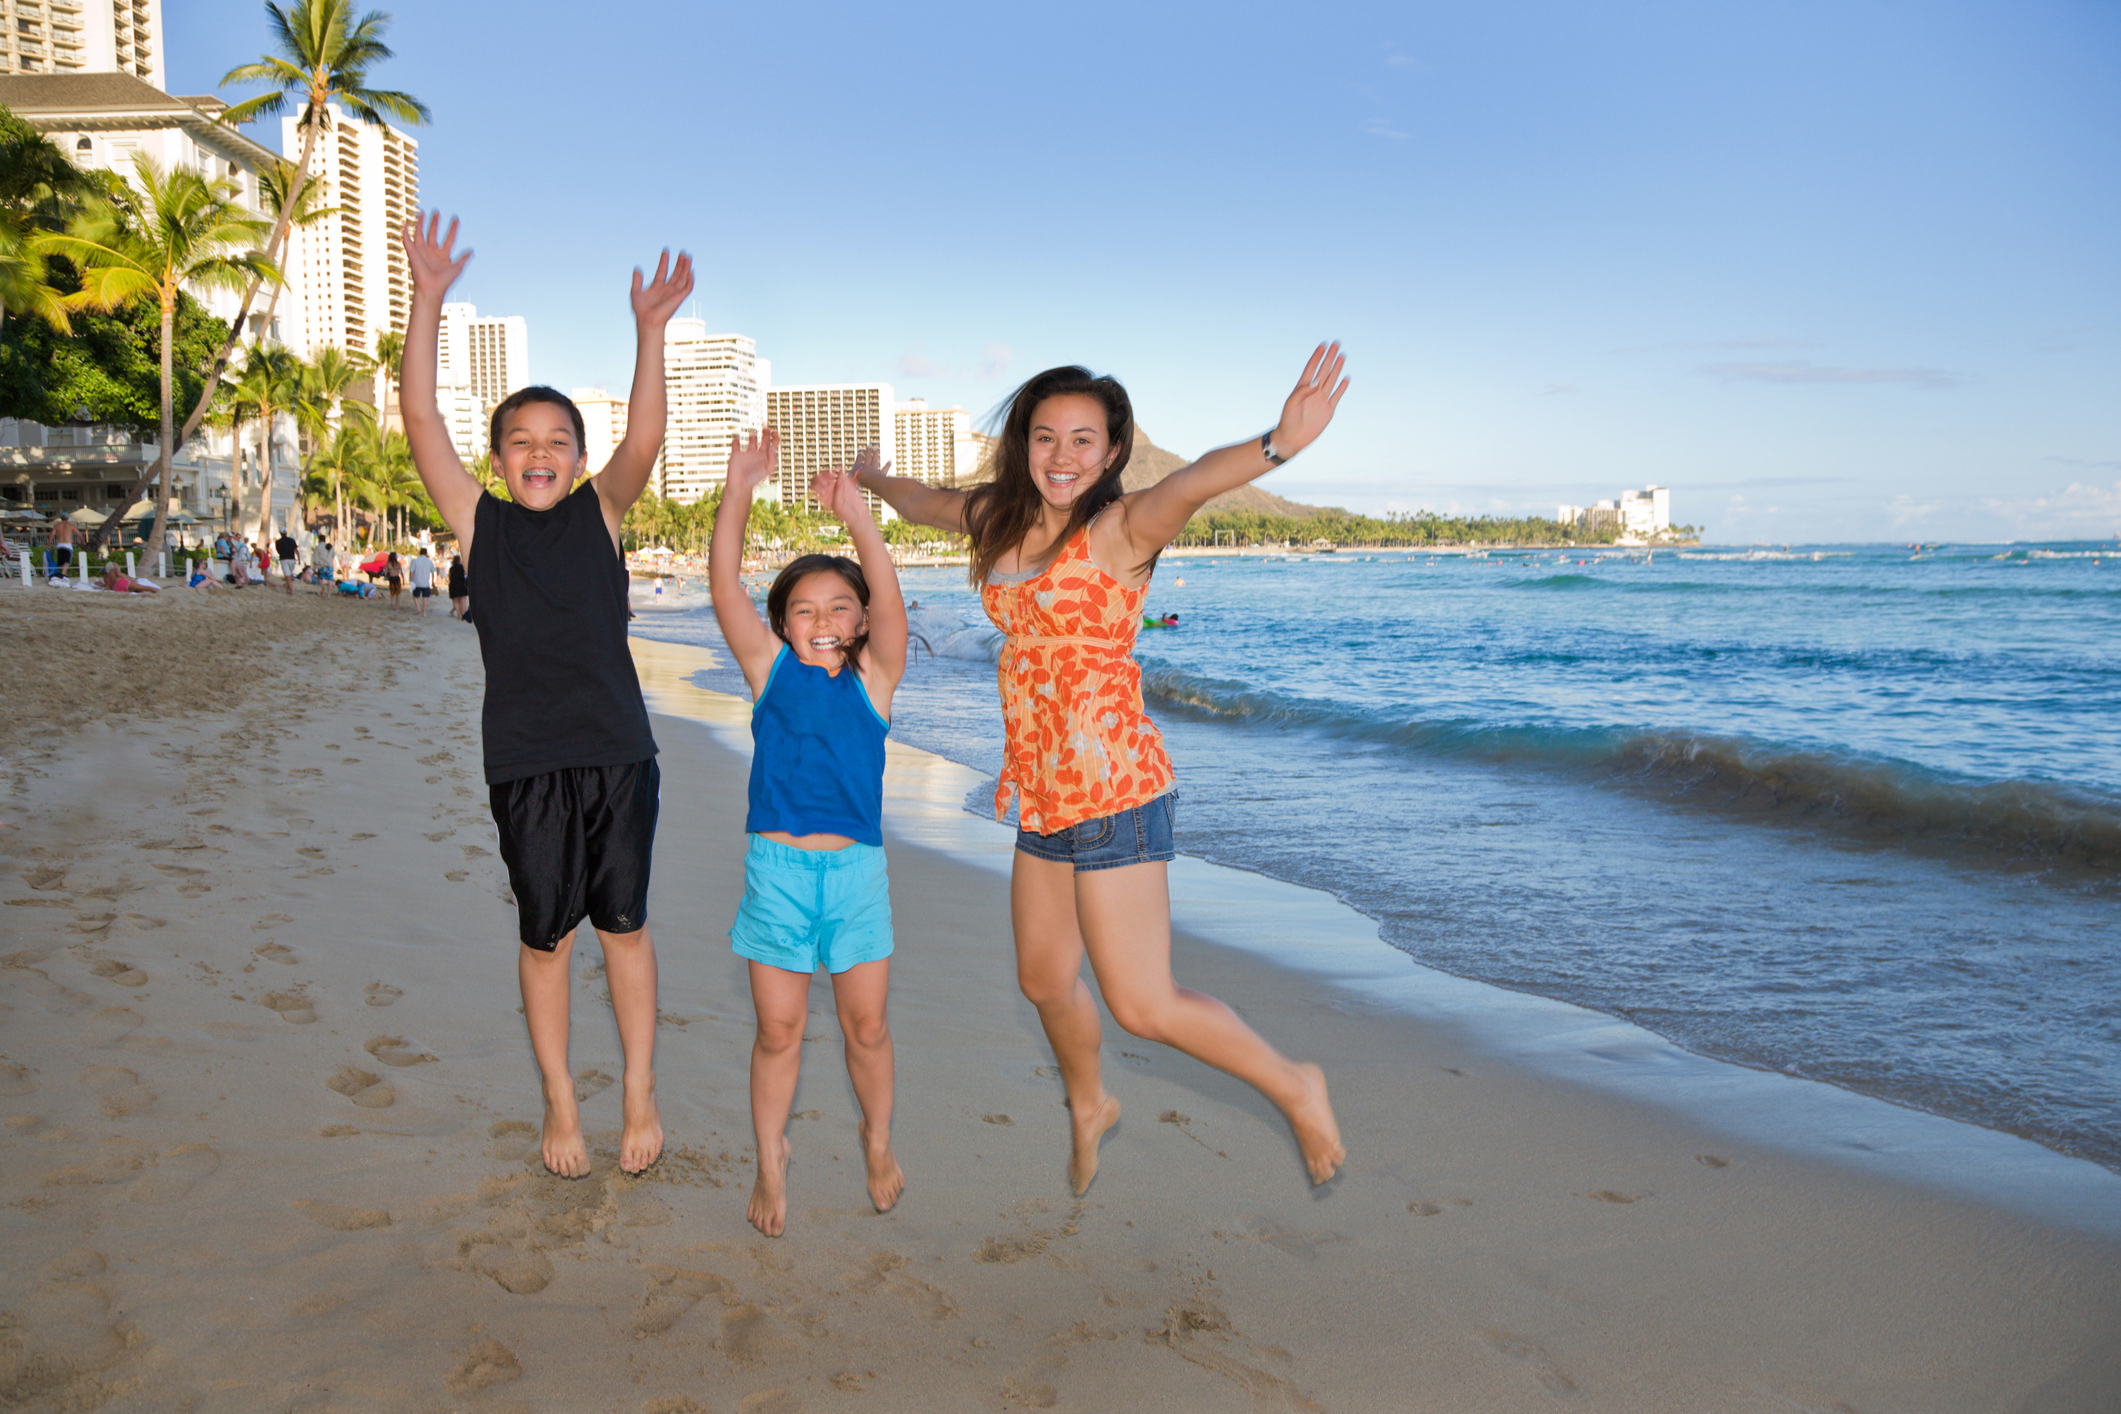 Three kids jump together on Waikiki Beach at sunset.